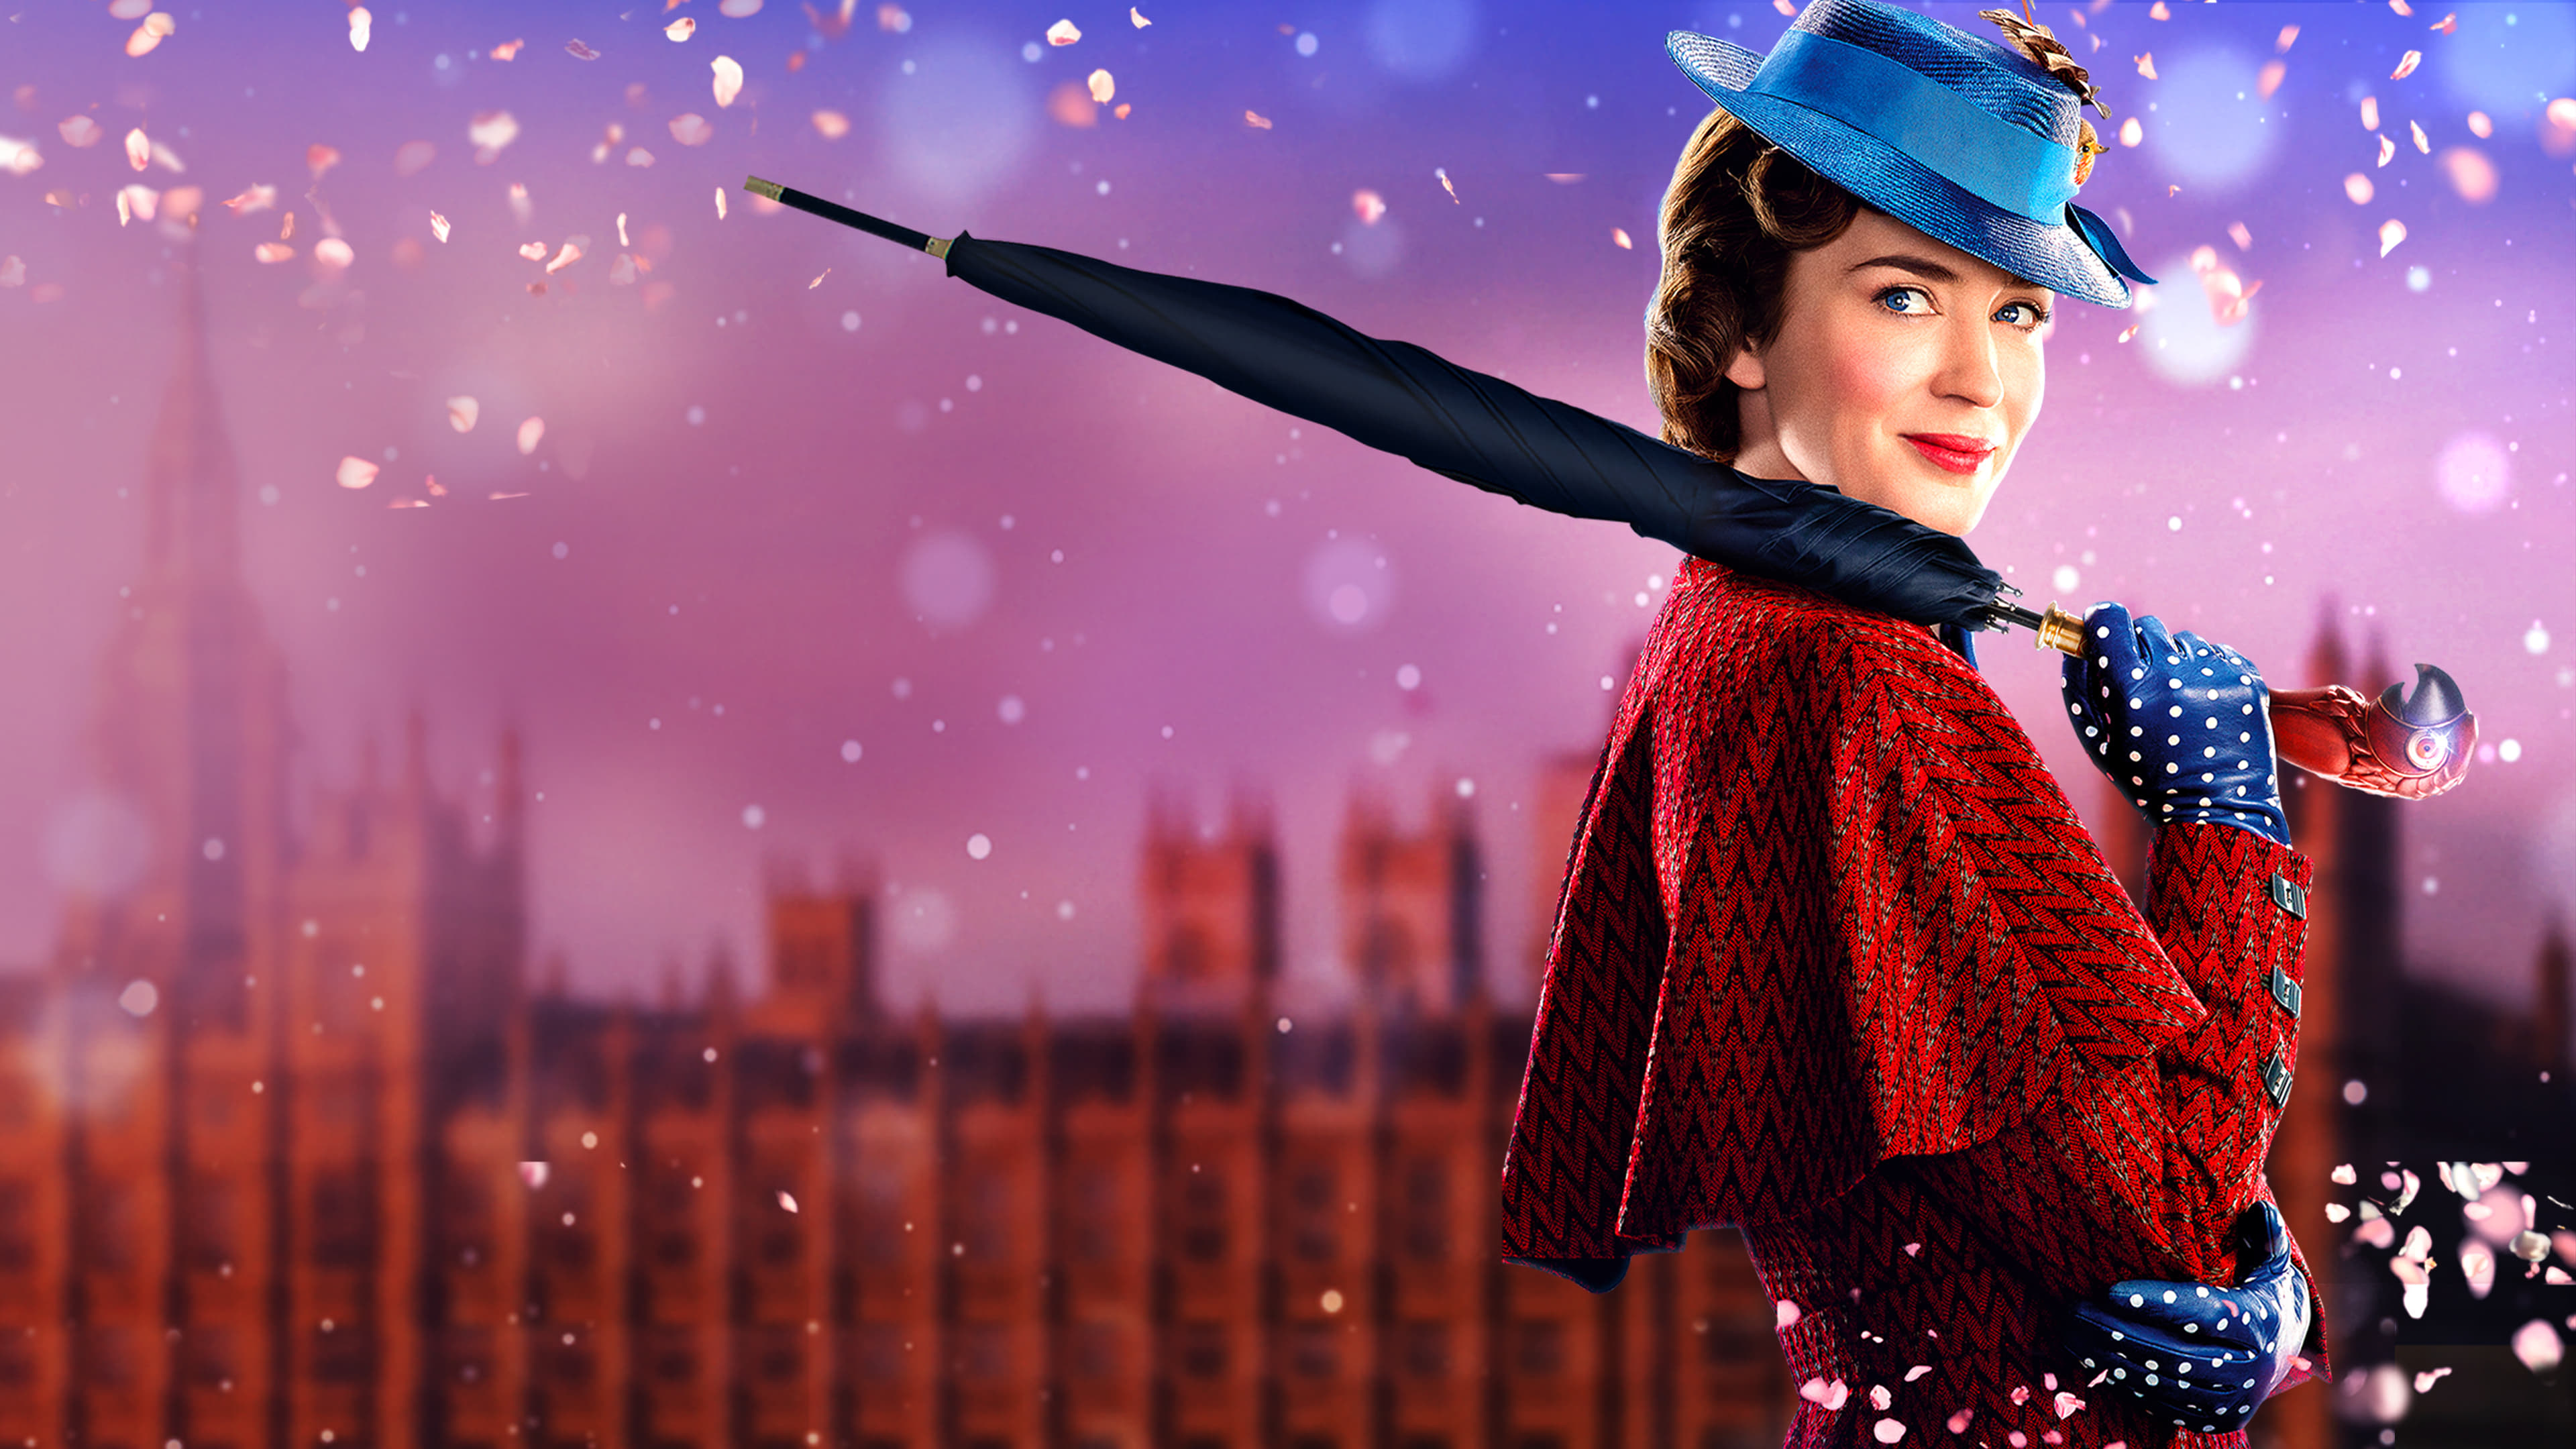 Mary Poppins Returns 2018, Backdrops, Movie database, Tmdb, 3840x2160 4K Desktop